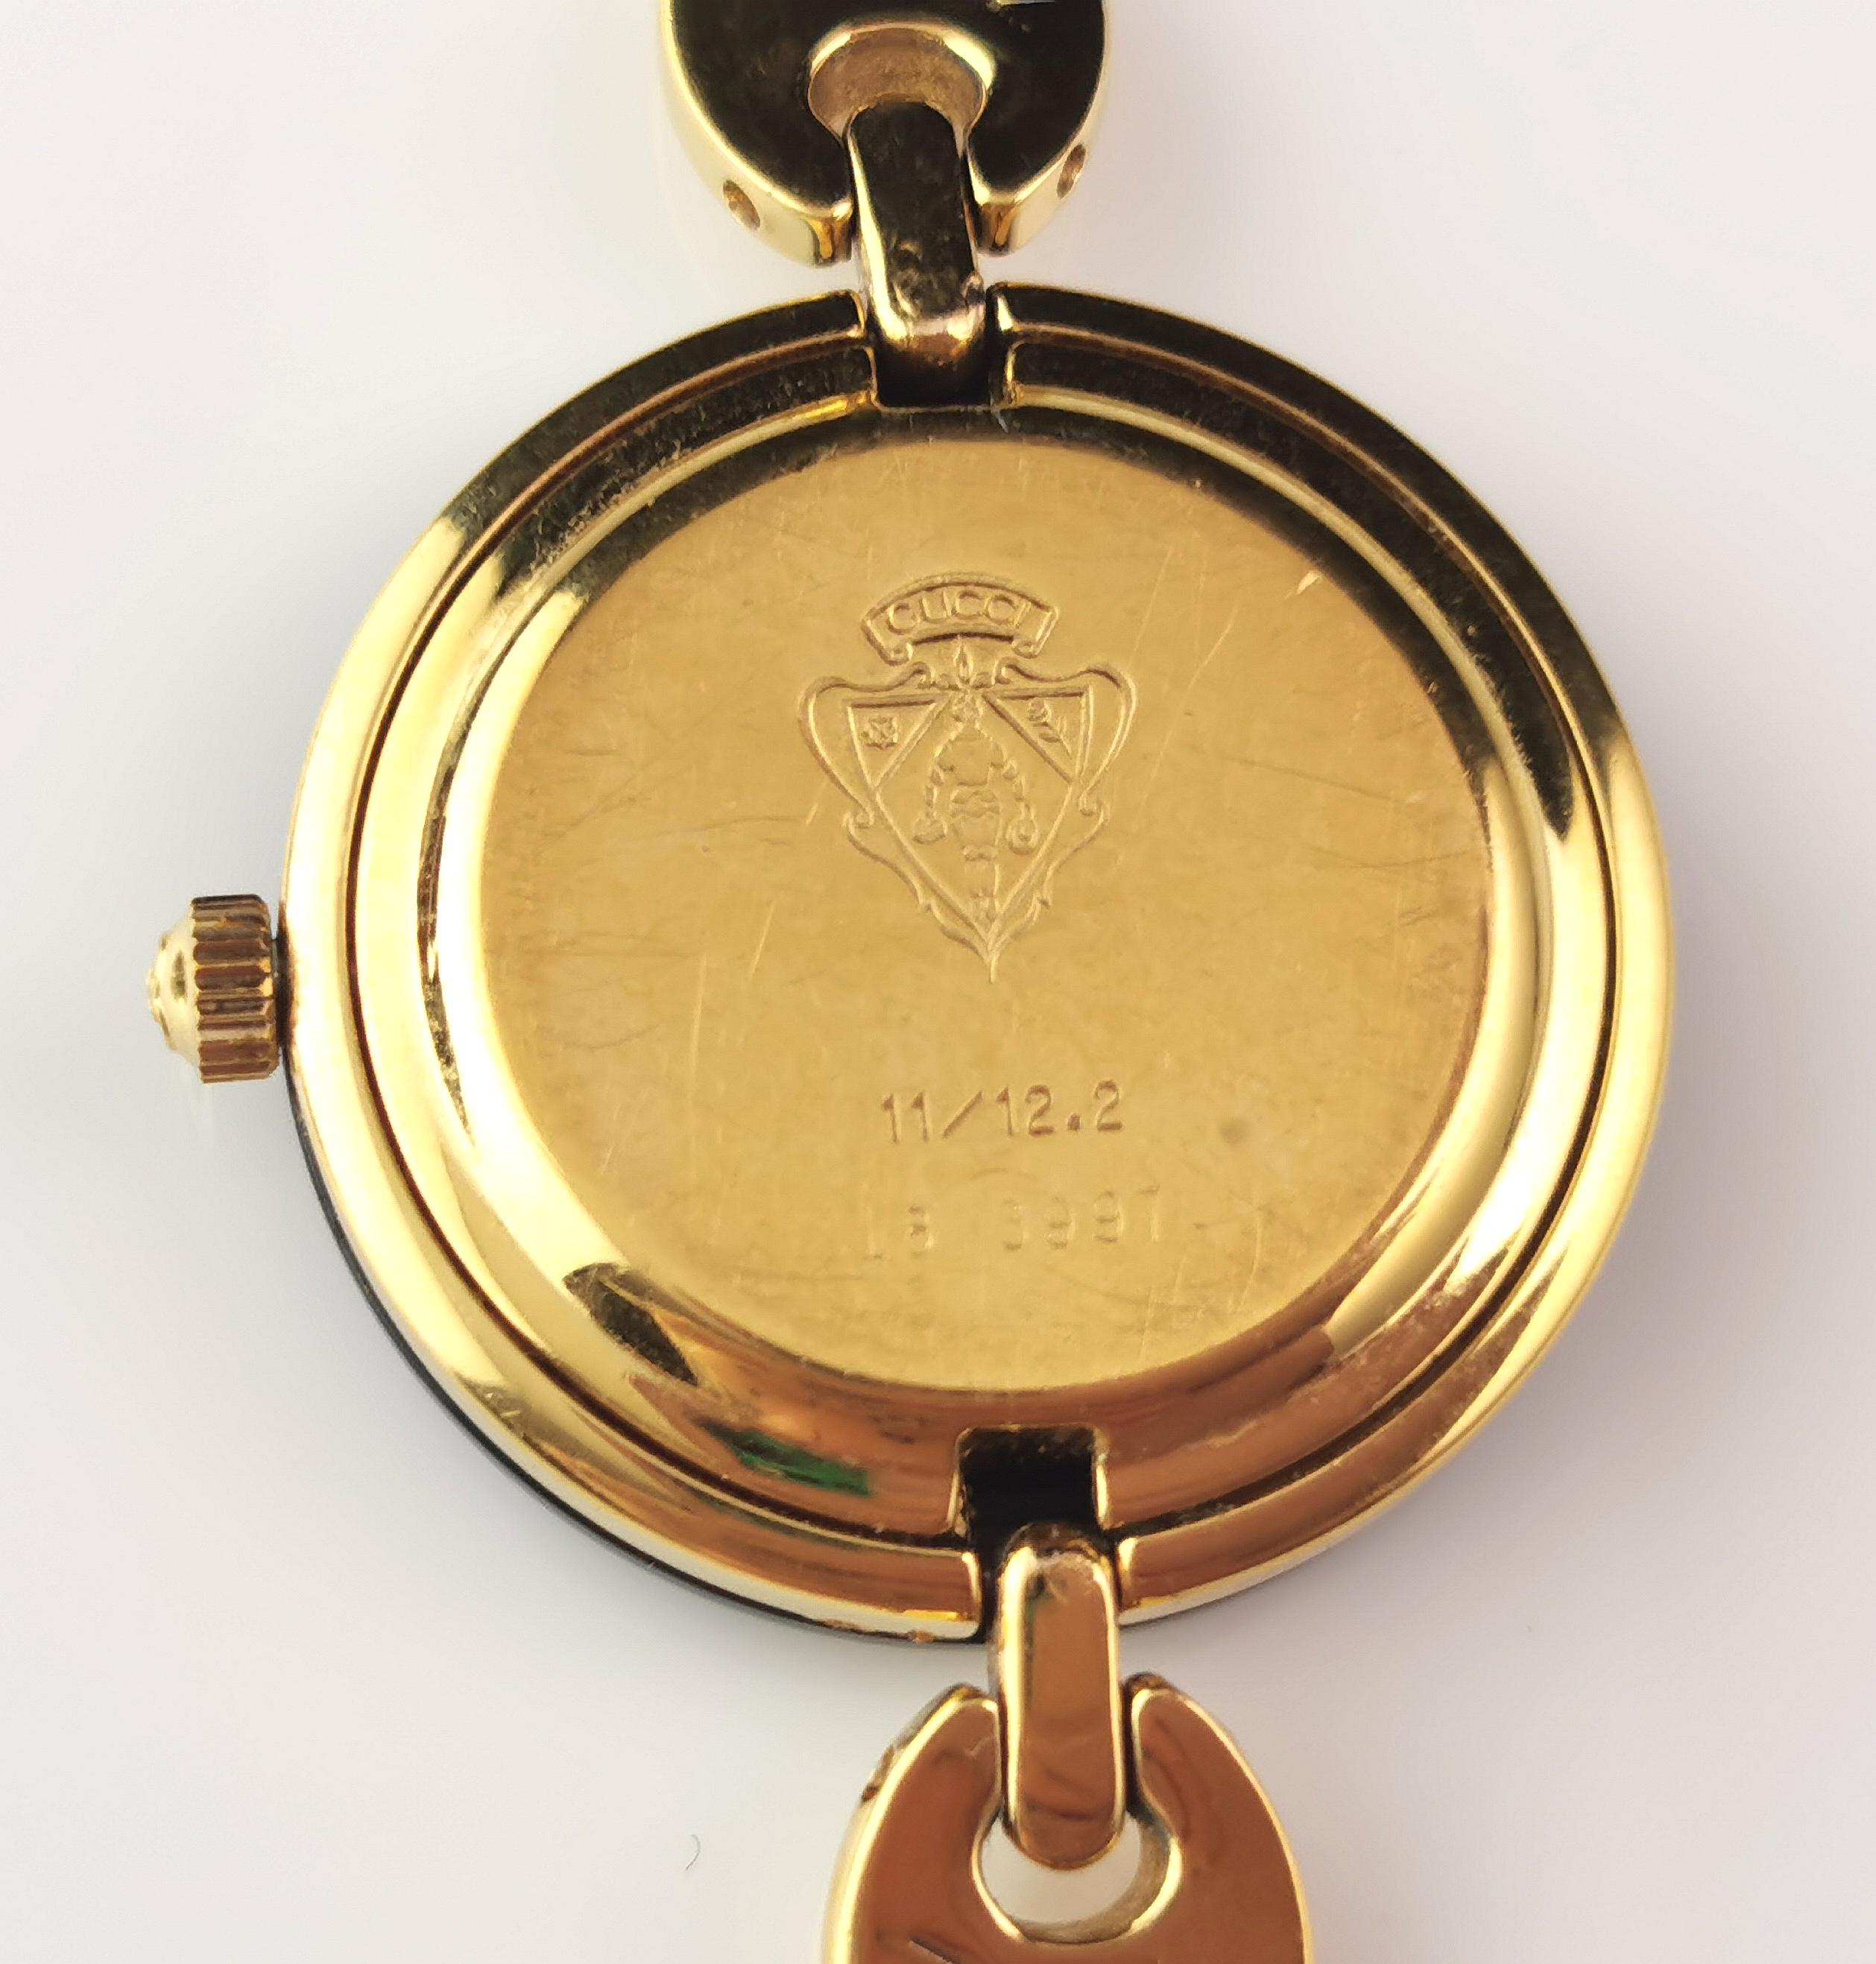 Vintage Gucci 11/12.2 gold plated ladies wristwatch, bracelet strap, Bezels 8